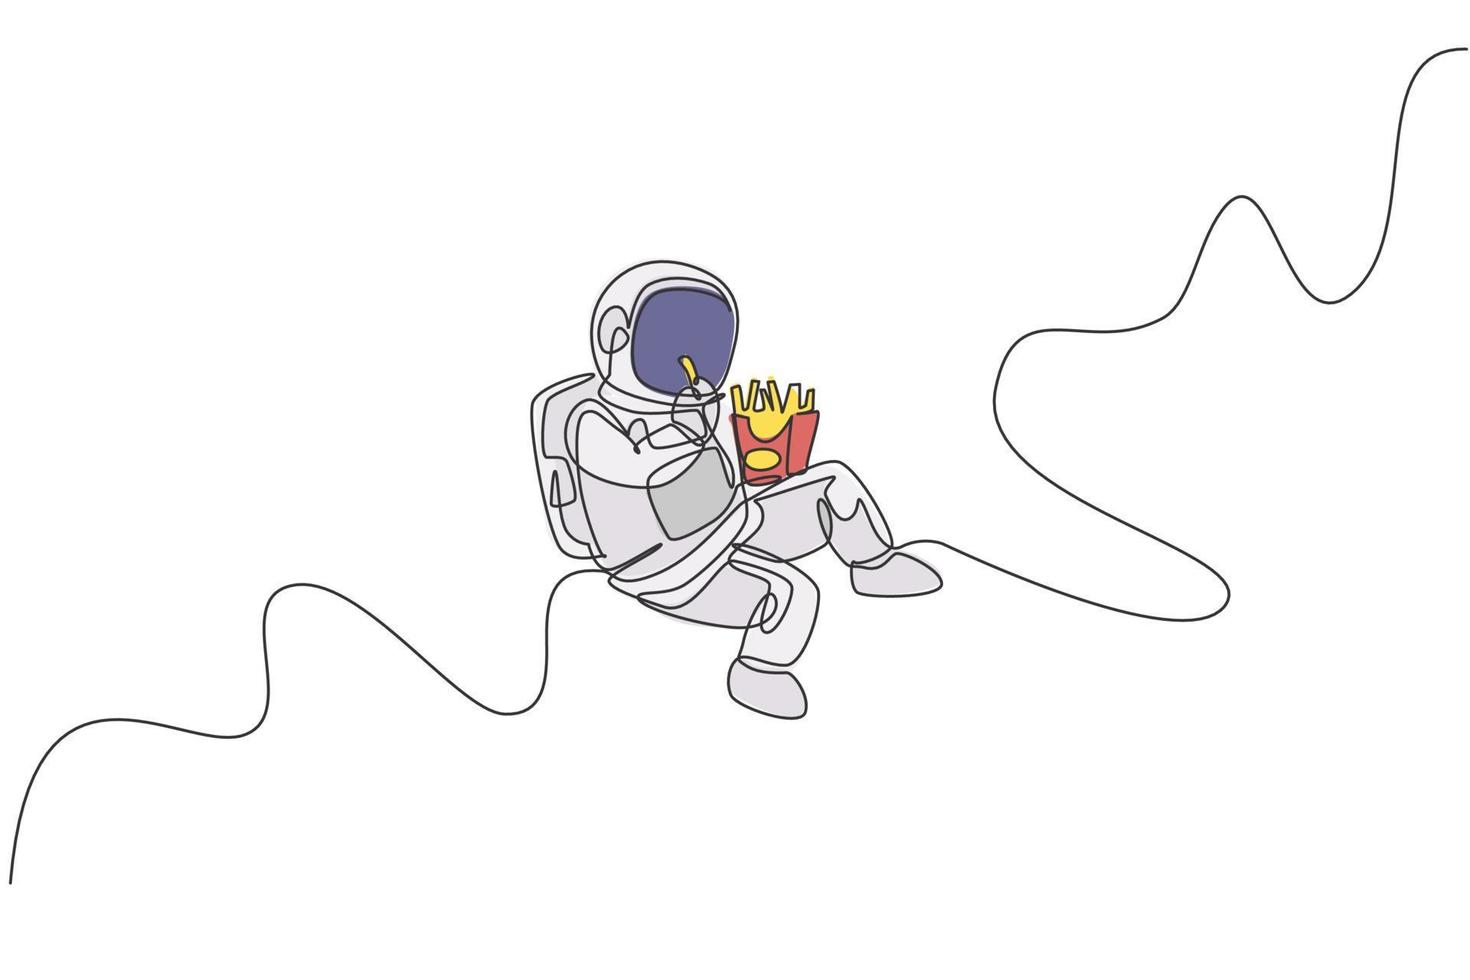 un disegno a tratteggio unico dell'astronauta che vola nella galassia dell'universo mentre mangia l'illustrazione grafica vettoriale di patatine fritte. concetto di vita dello spazio cosmico di fantasia. design moderno a linea continua